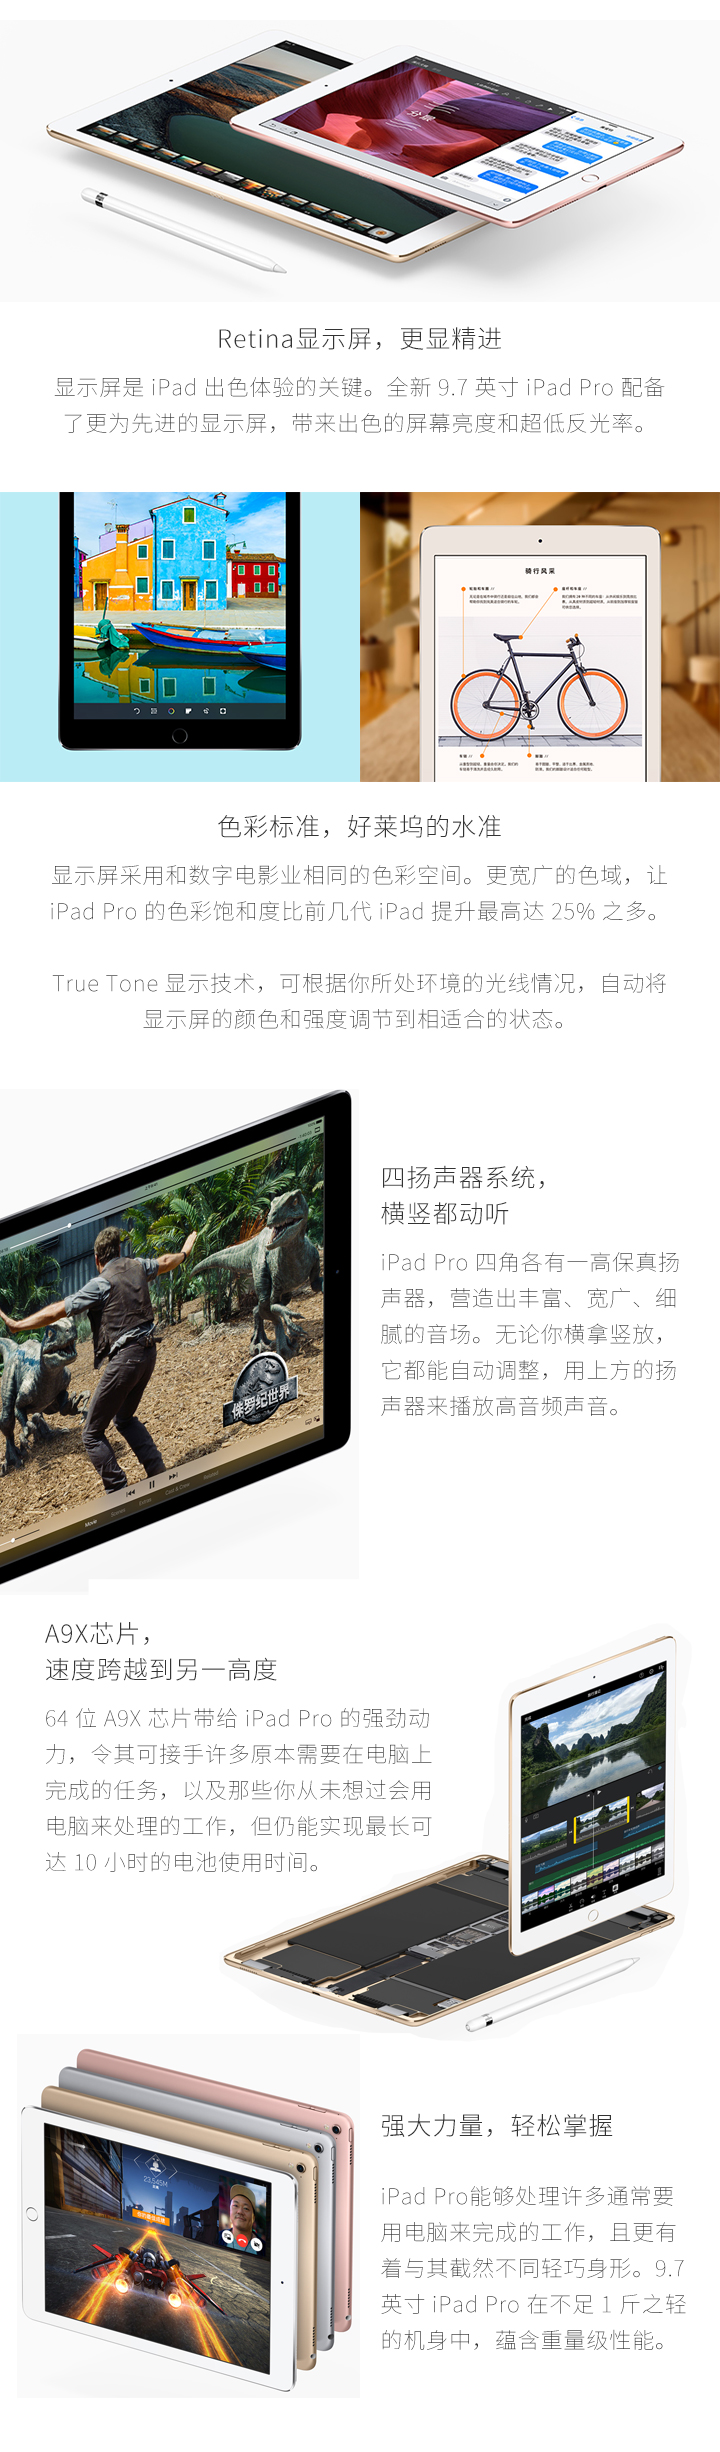 苹果新iPad Pro免费试用,评测